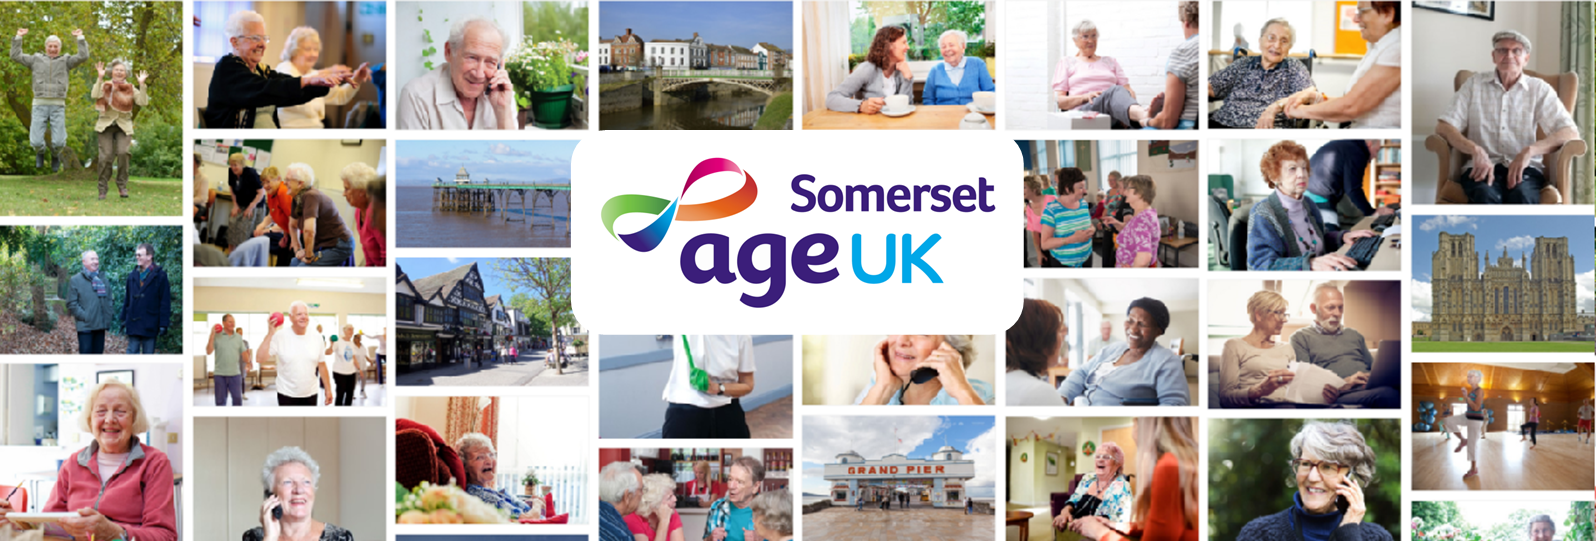 Age UK Somerset collage